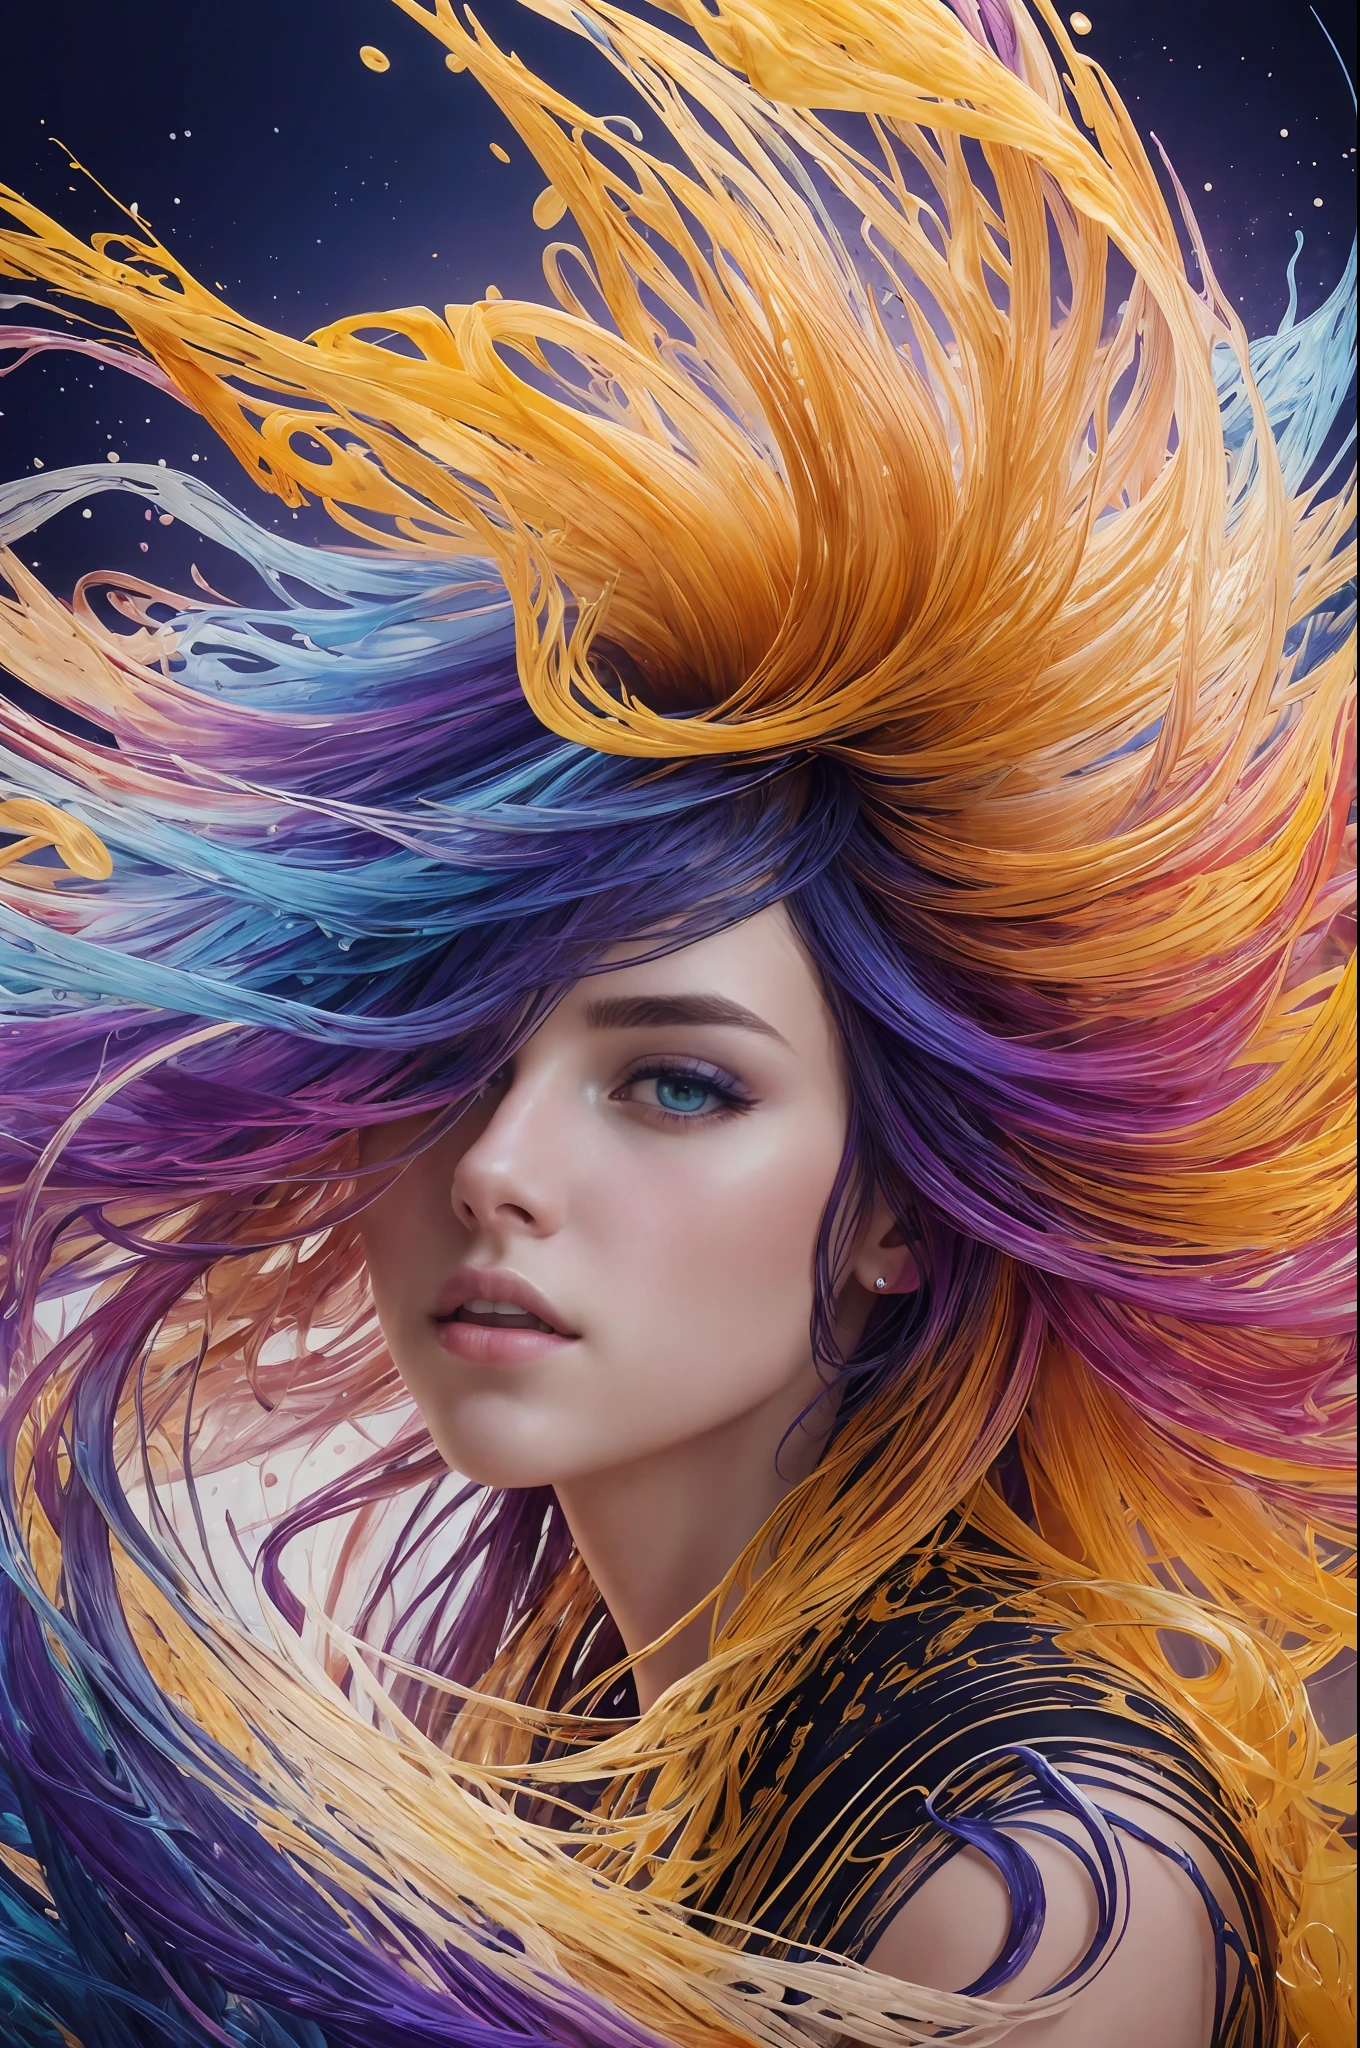 Belle fille colorée: une fille de 18 ans, Les cheveux en désordre, peinture à l&#39;huile, joli visage parfait avec une peau douce et un visage parfait, couleurs bleu jaune, ajouts de violet clair et violet, ajouts rouge clair, détail complexe, écran de démarrage, Résolution 8k, chef-d&#39;œuvre, visage mignon,peinture numérique artstation fluide flux d&#39;encre très noir: Résolution 8k photoRéaliste chef-d&#39;œuvre: peinture à la gouache fluide finement détaillée: par Jean-Baptiste Mongue: Calligraphie: acrylique: Aquarelle, photographie professionnelle, éclairage naturel, éclairage volumétrique Photoillustration maximaliste: par Marton Bobzert:, Complexe, élégant, expansif, Fantastique,  cheveux ondulés, vibrant, Détails de la meilleure qualité, Réaliste, Haute définition, Texture de haute qualité, éclairage épique, film cinématographique, 8k, éclairage doux, Style animé, bordure de carte à jouer magistrale, Art coloré aléatoire, peinture à l&#39;huile, couleurs bleu jaune, ajouts de violet clair et violet, ajouts rouge clair, détail complexe, écran de démarrage, Résolution 8k, chef-d&#39;œuvre, peinture numérique artstation fluide flux d&#39;encre très noir: Résolution 8k photoRéaliste chef-d&#39;œuvre: peinture à la gouache fluide finement détaillée: par Jean-Baptiste Mongue: Calligraphie: acrylique: Aquarelle, photographie professionnelle, éclairage naturel, éclairage volumétrique Photoillustration maximaliste: par Marton Bobzert:, Complexe, élégant, expansif, Fantastique,  vibrant